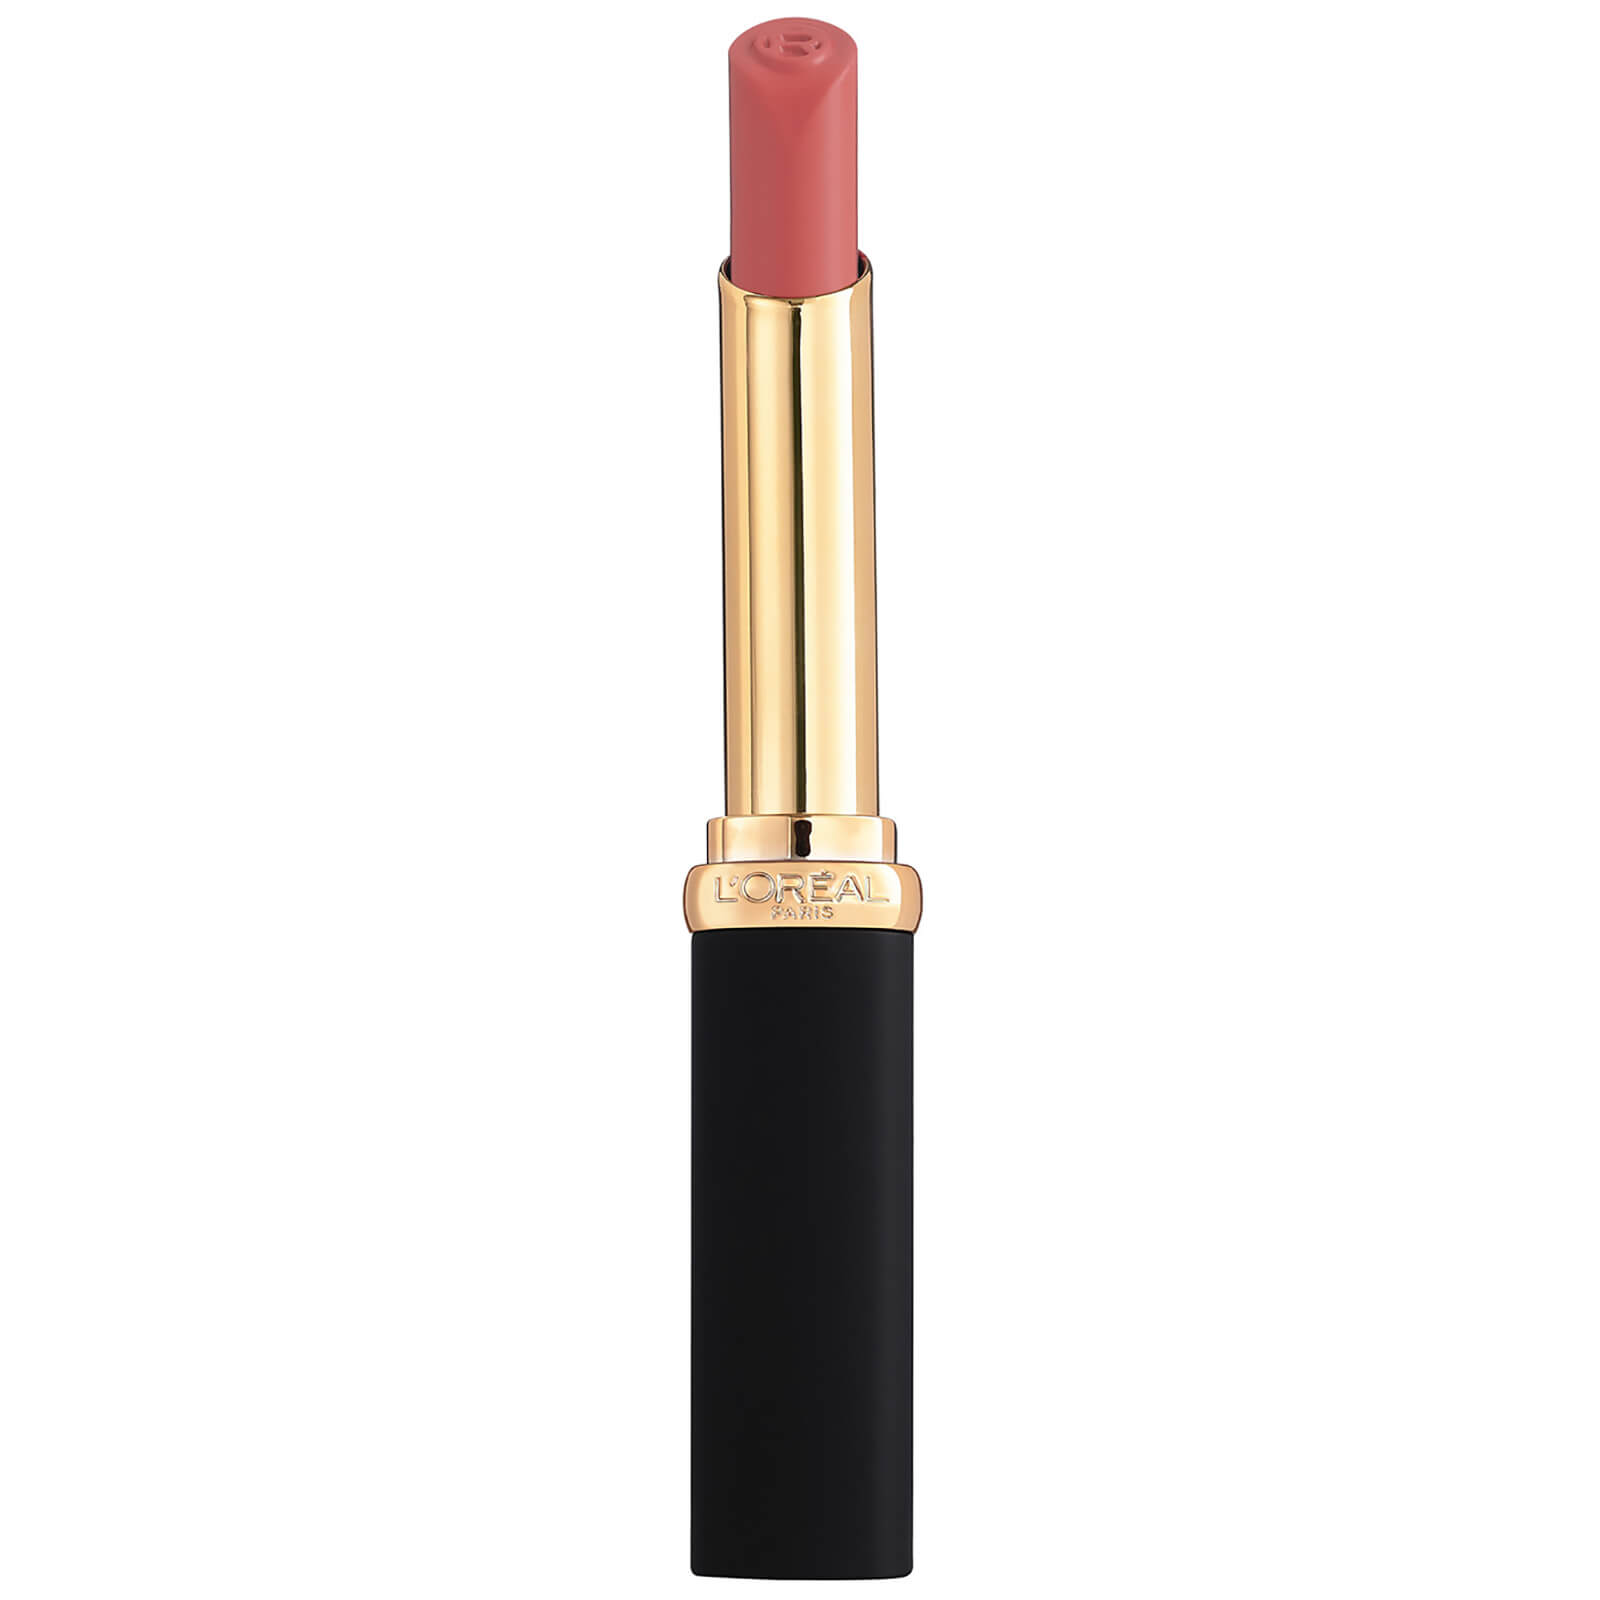 L'oréal Paris L'oreal Paris Colour Riche Intense Volume Matte Lipstick 25g (various Shades) - Blush Audace